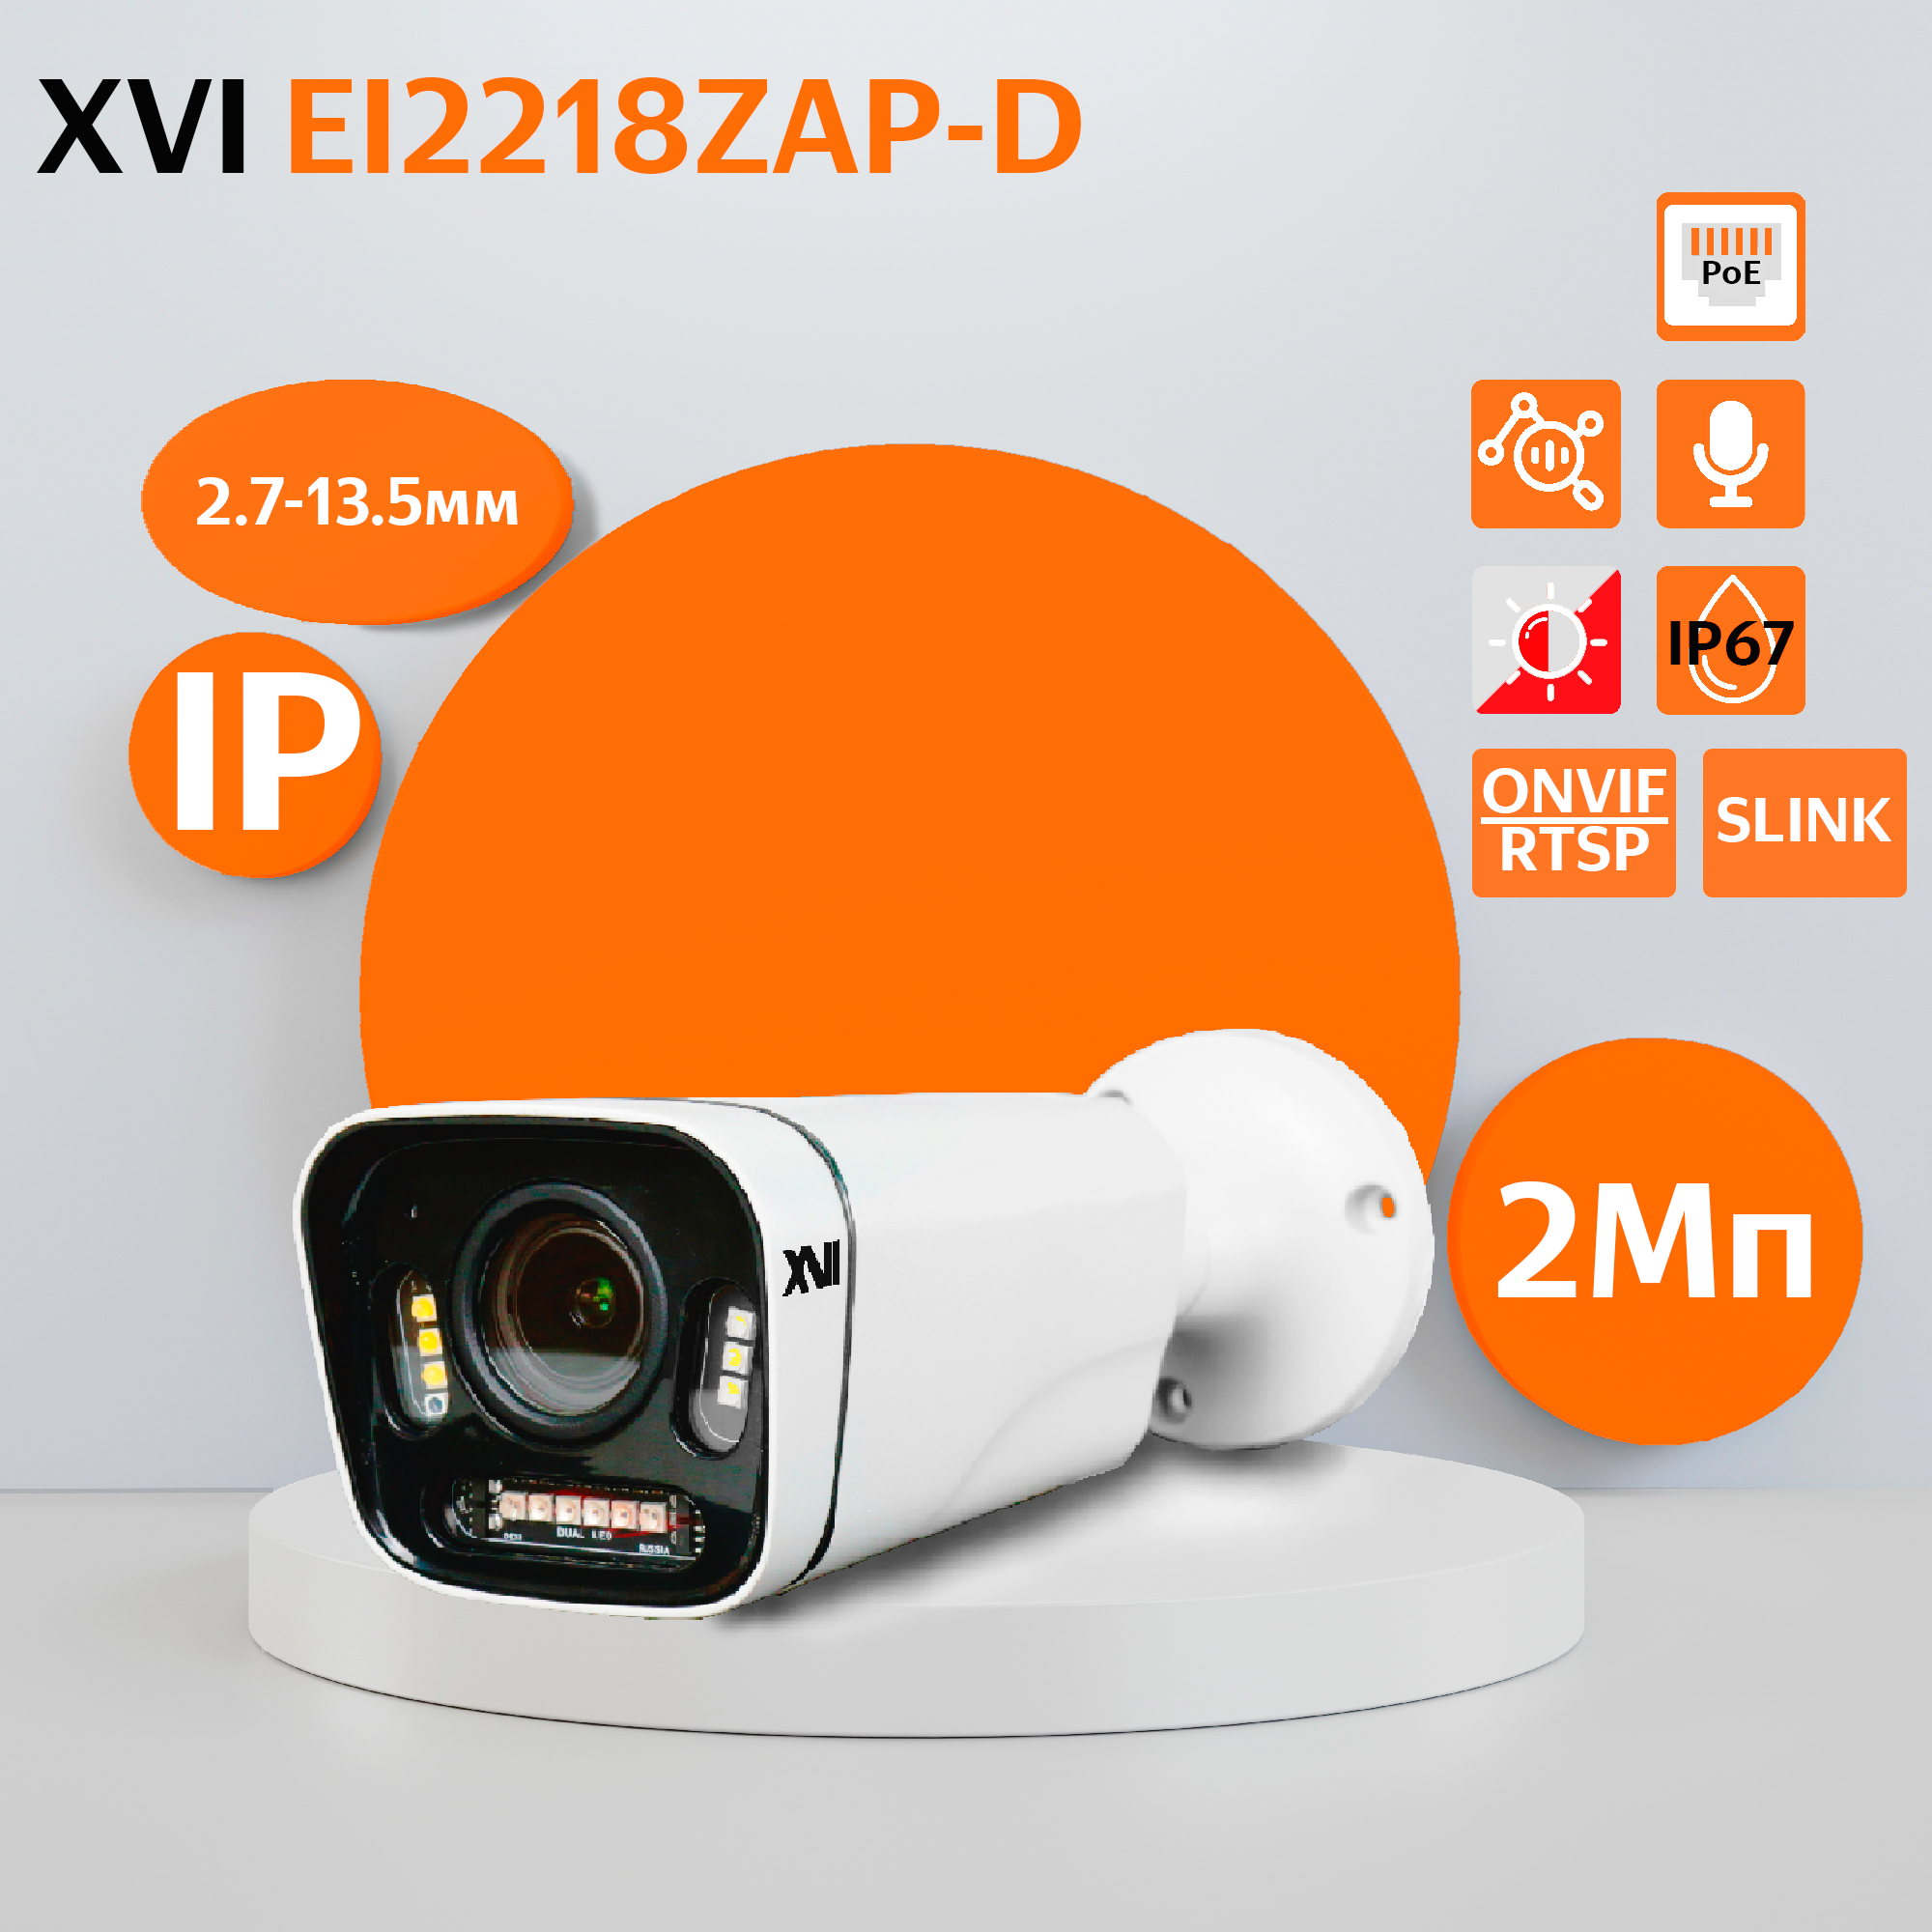 Уличная IP камера XVI EI2218ZAP-D, 2Мп, вариоф.объектив, PoE, ИК+белая, f=2.7-13.5мм